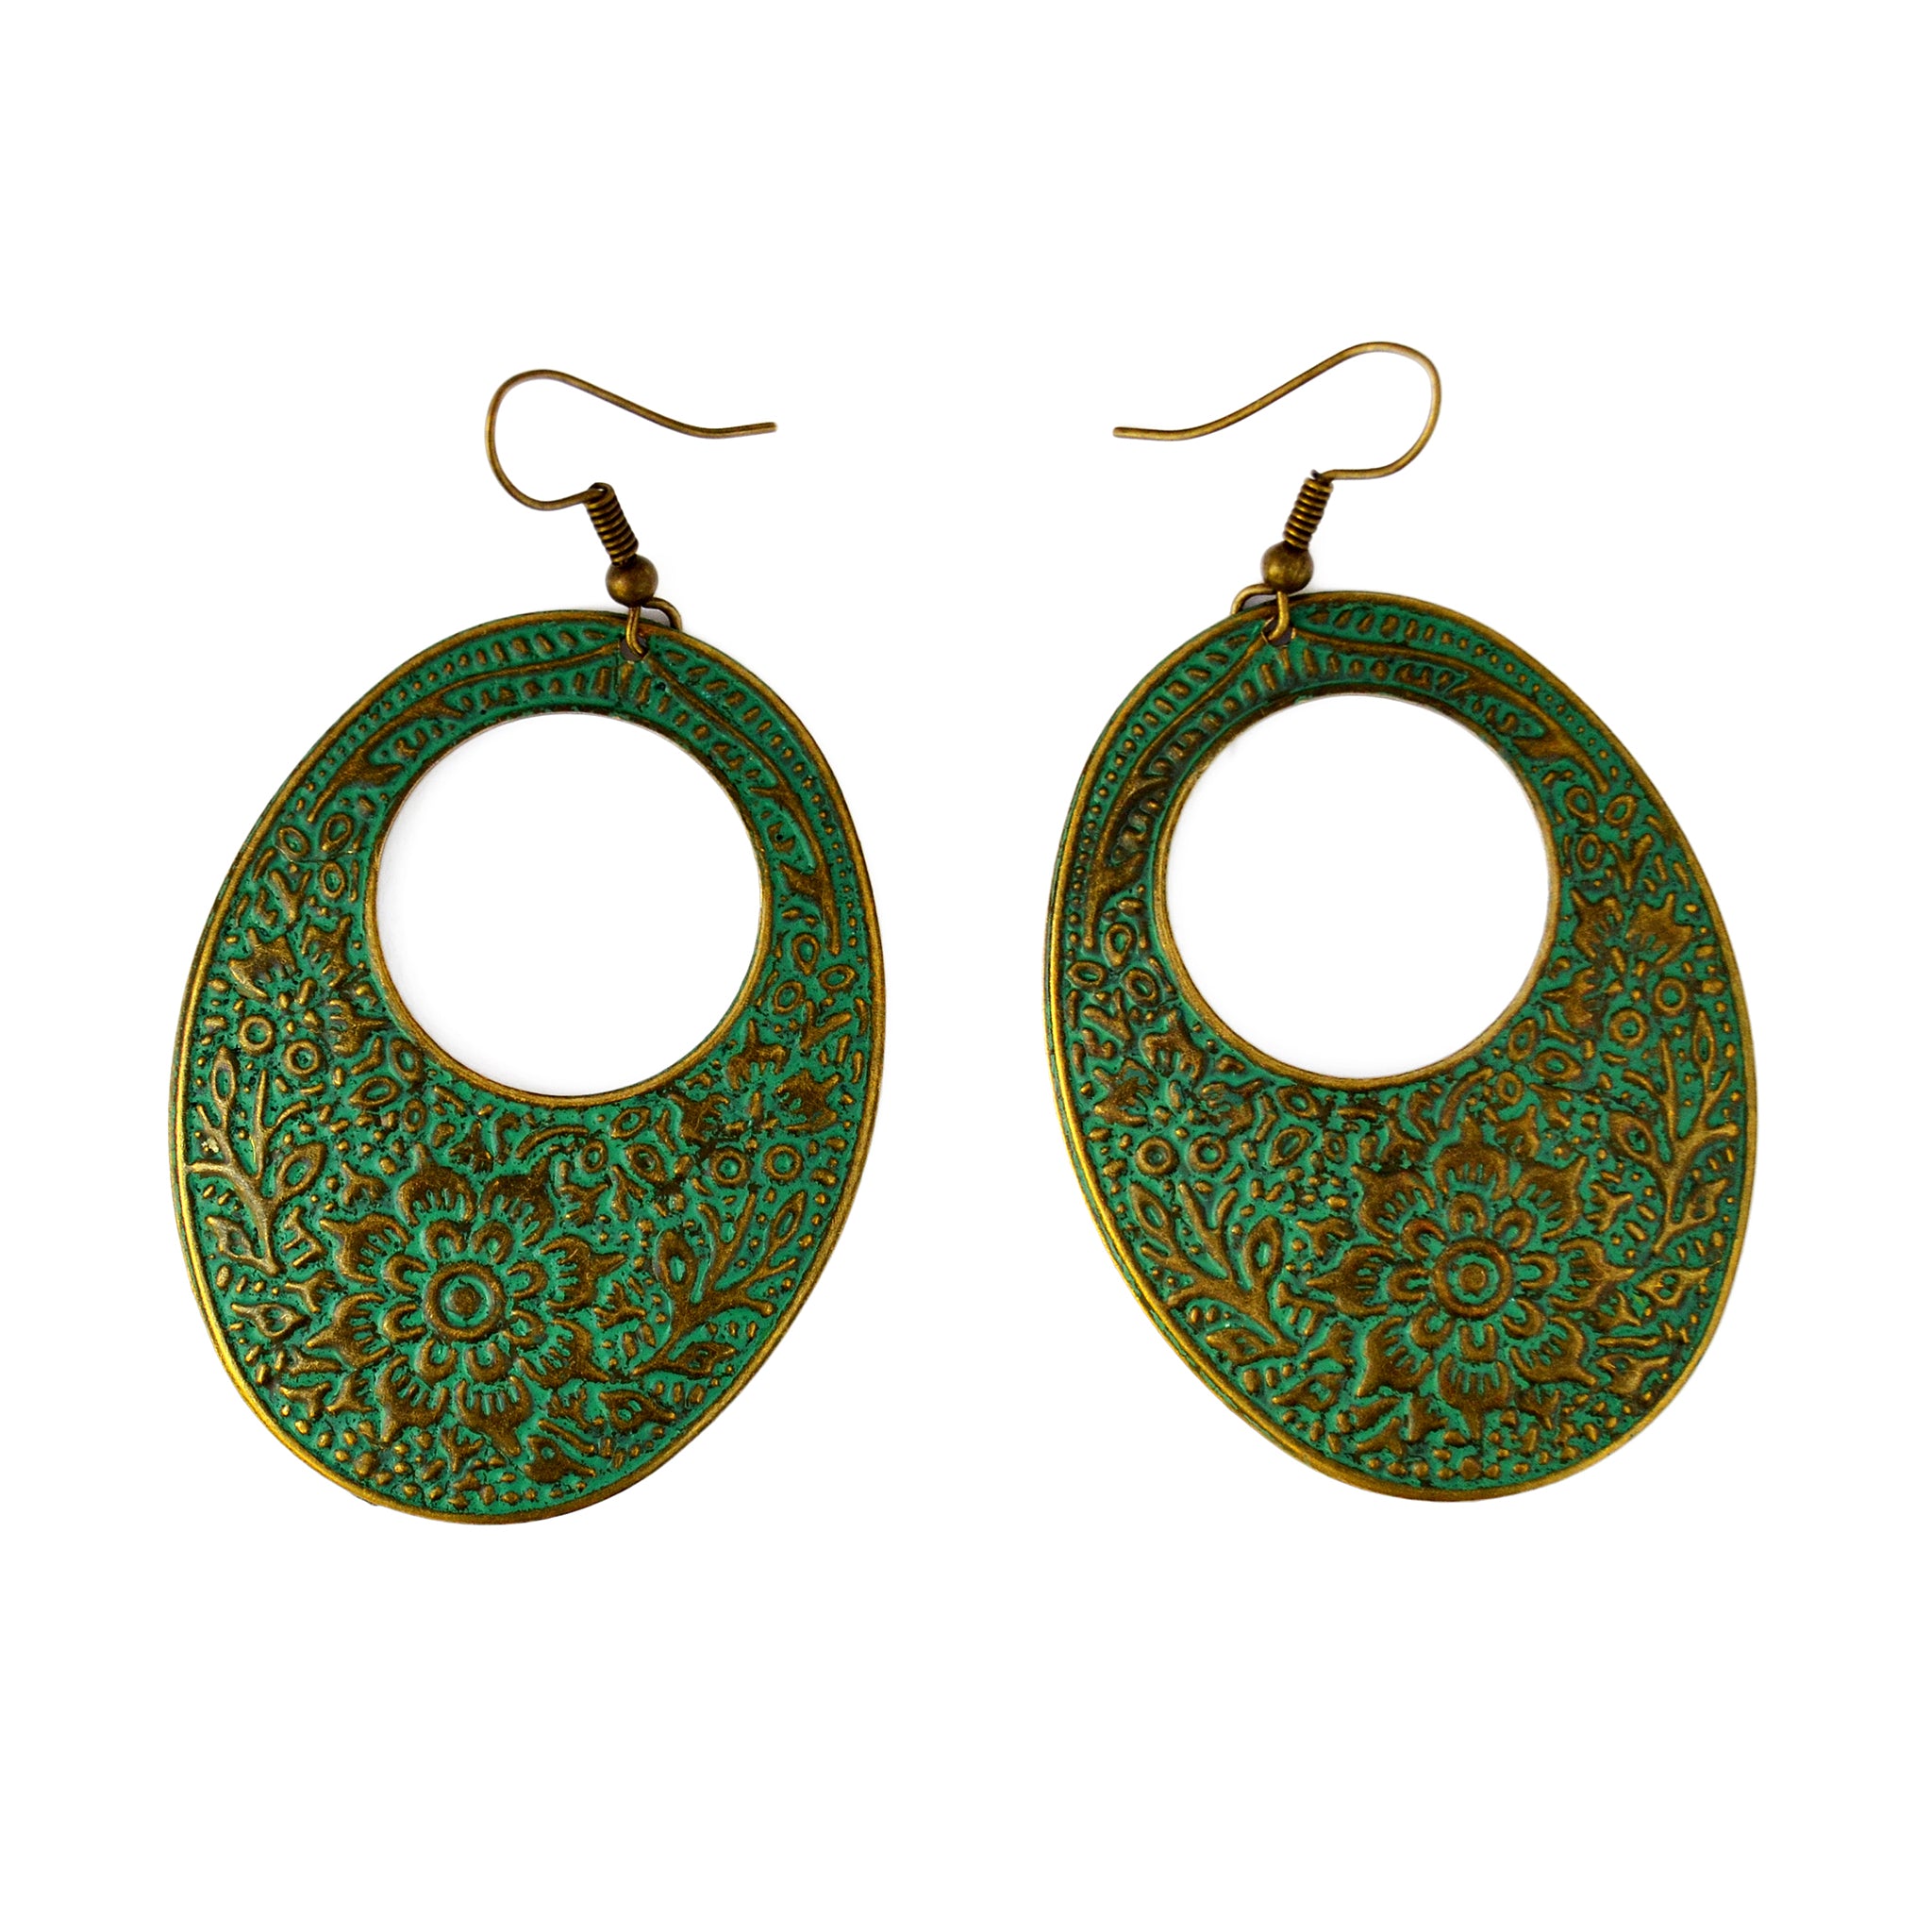 Verdigris oval earrings